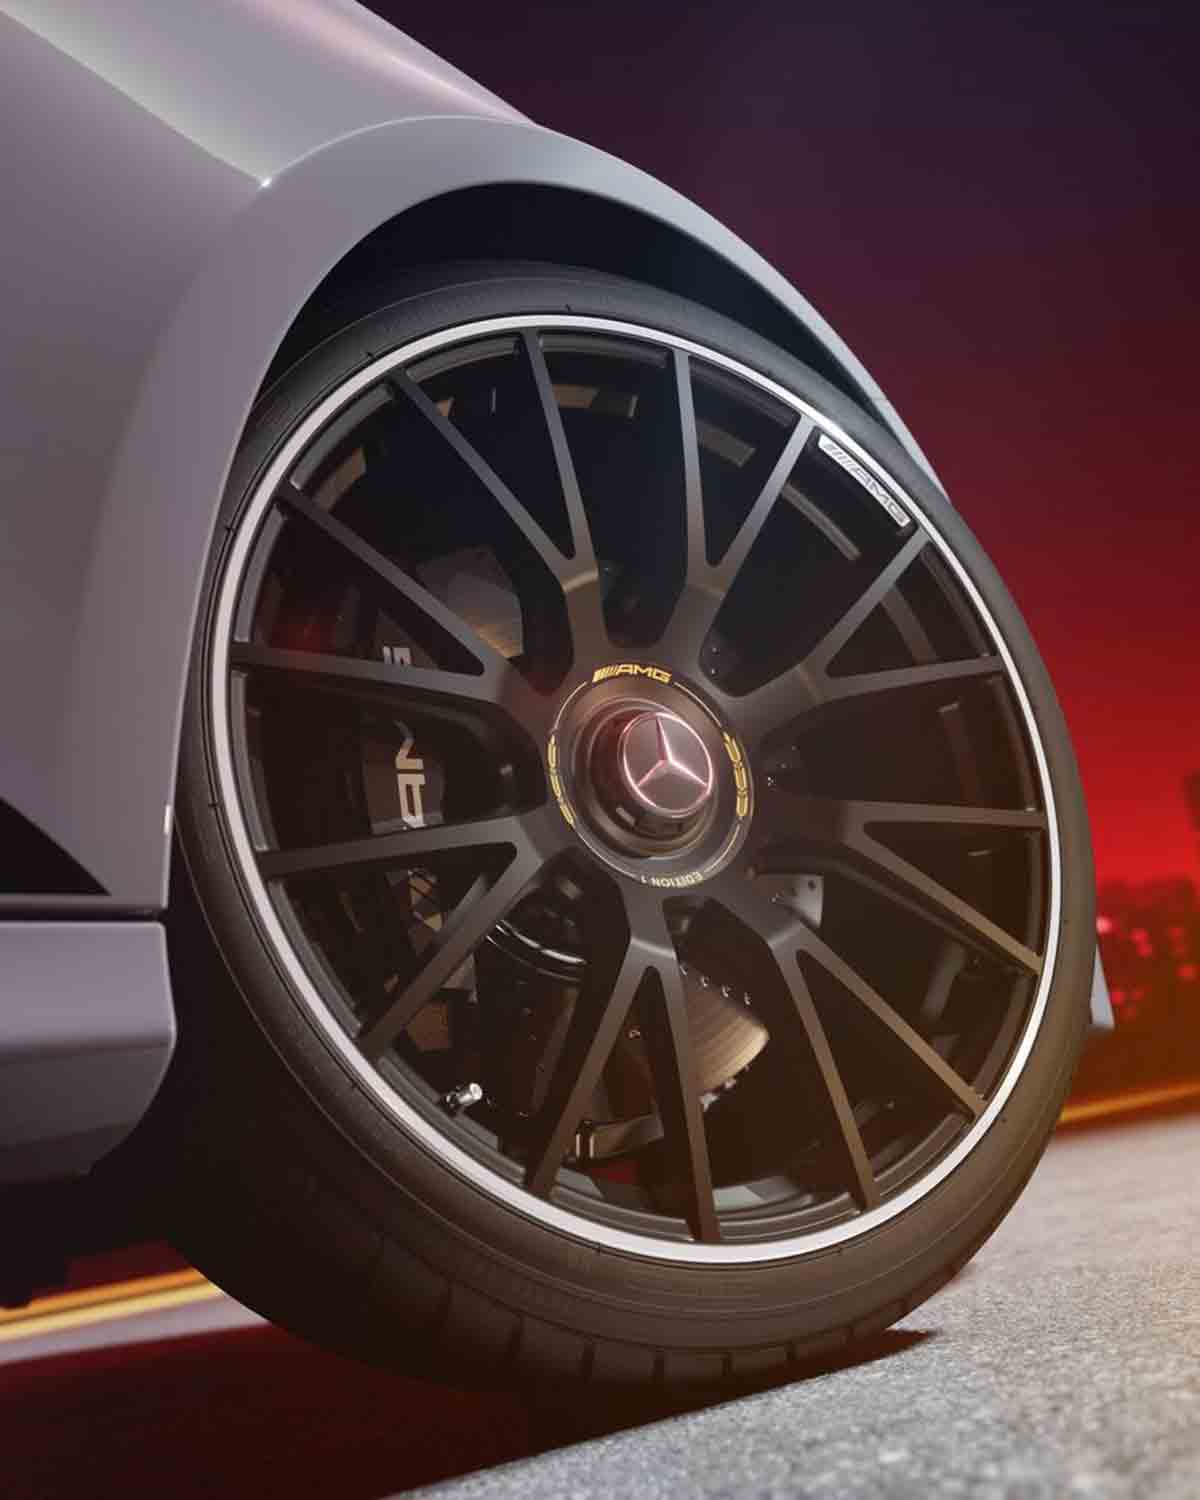 Mercedes-AMG E 53 combina potenza ed efficienza nell'ultima innovazione ibrida (Instagram / @mercedesamg)